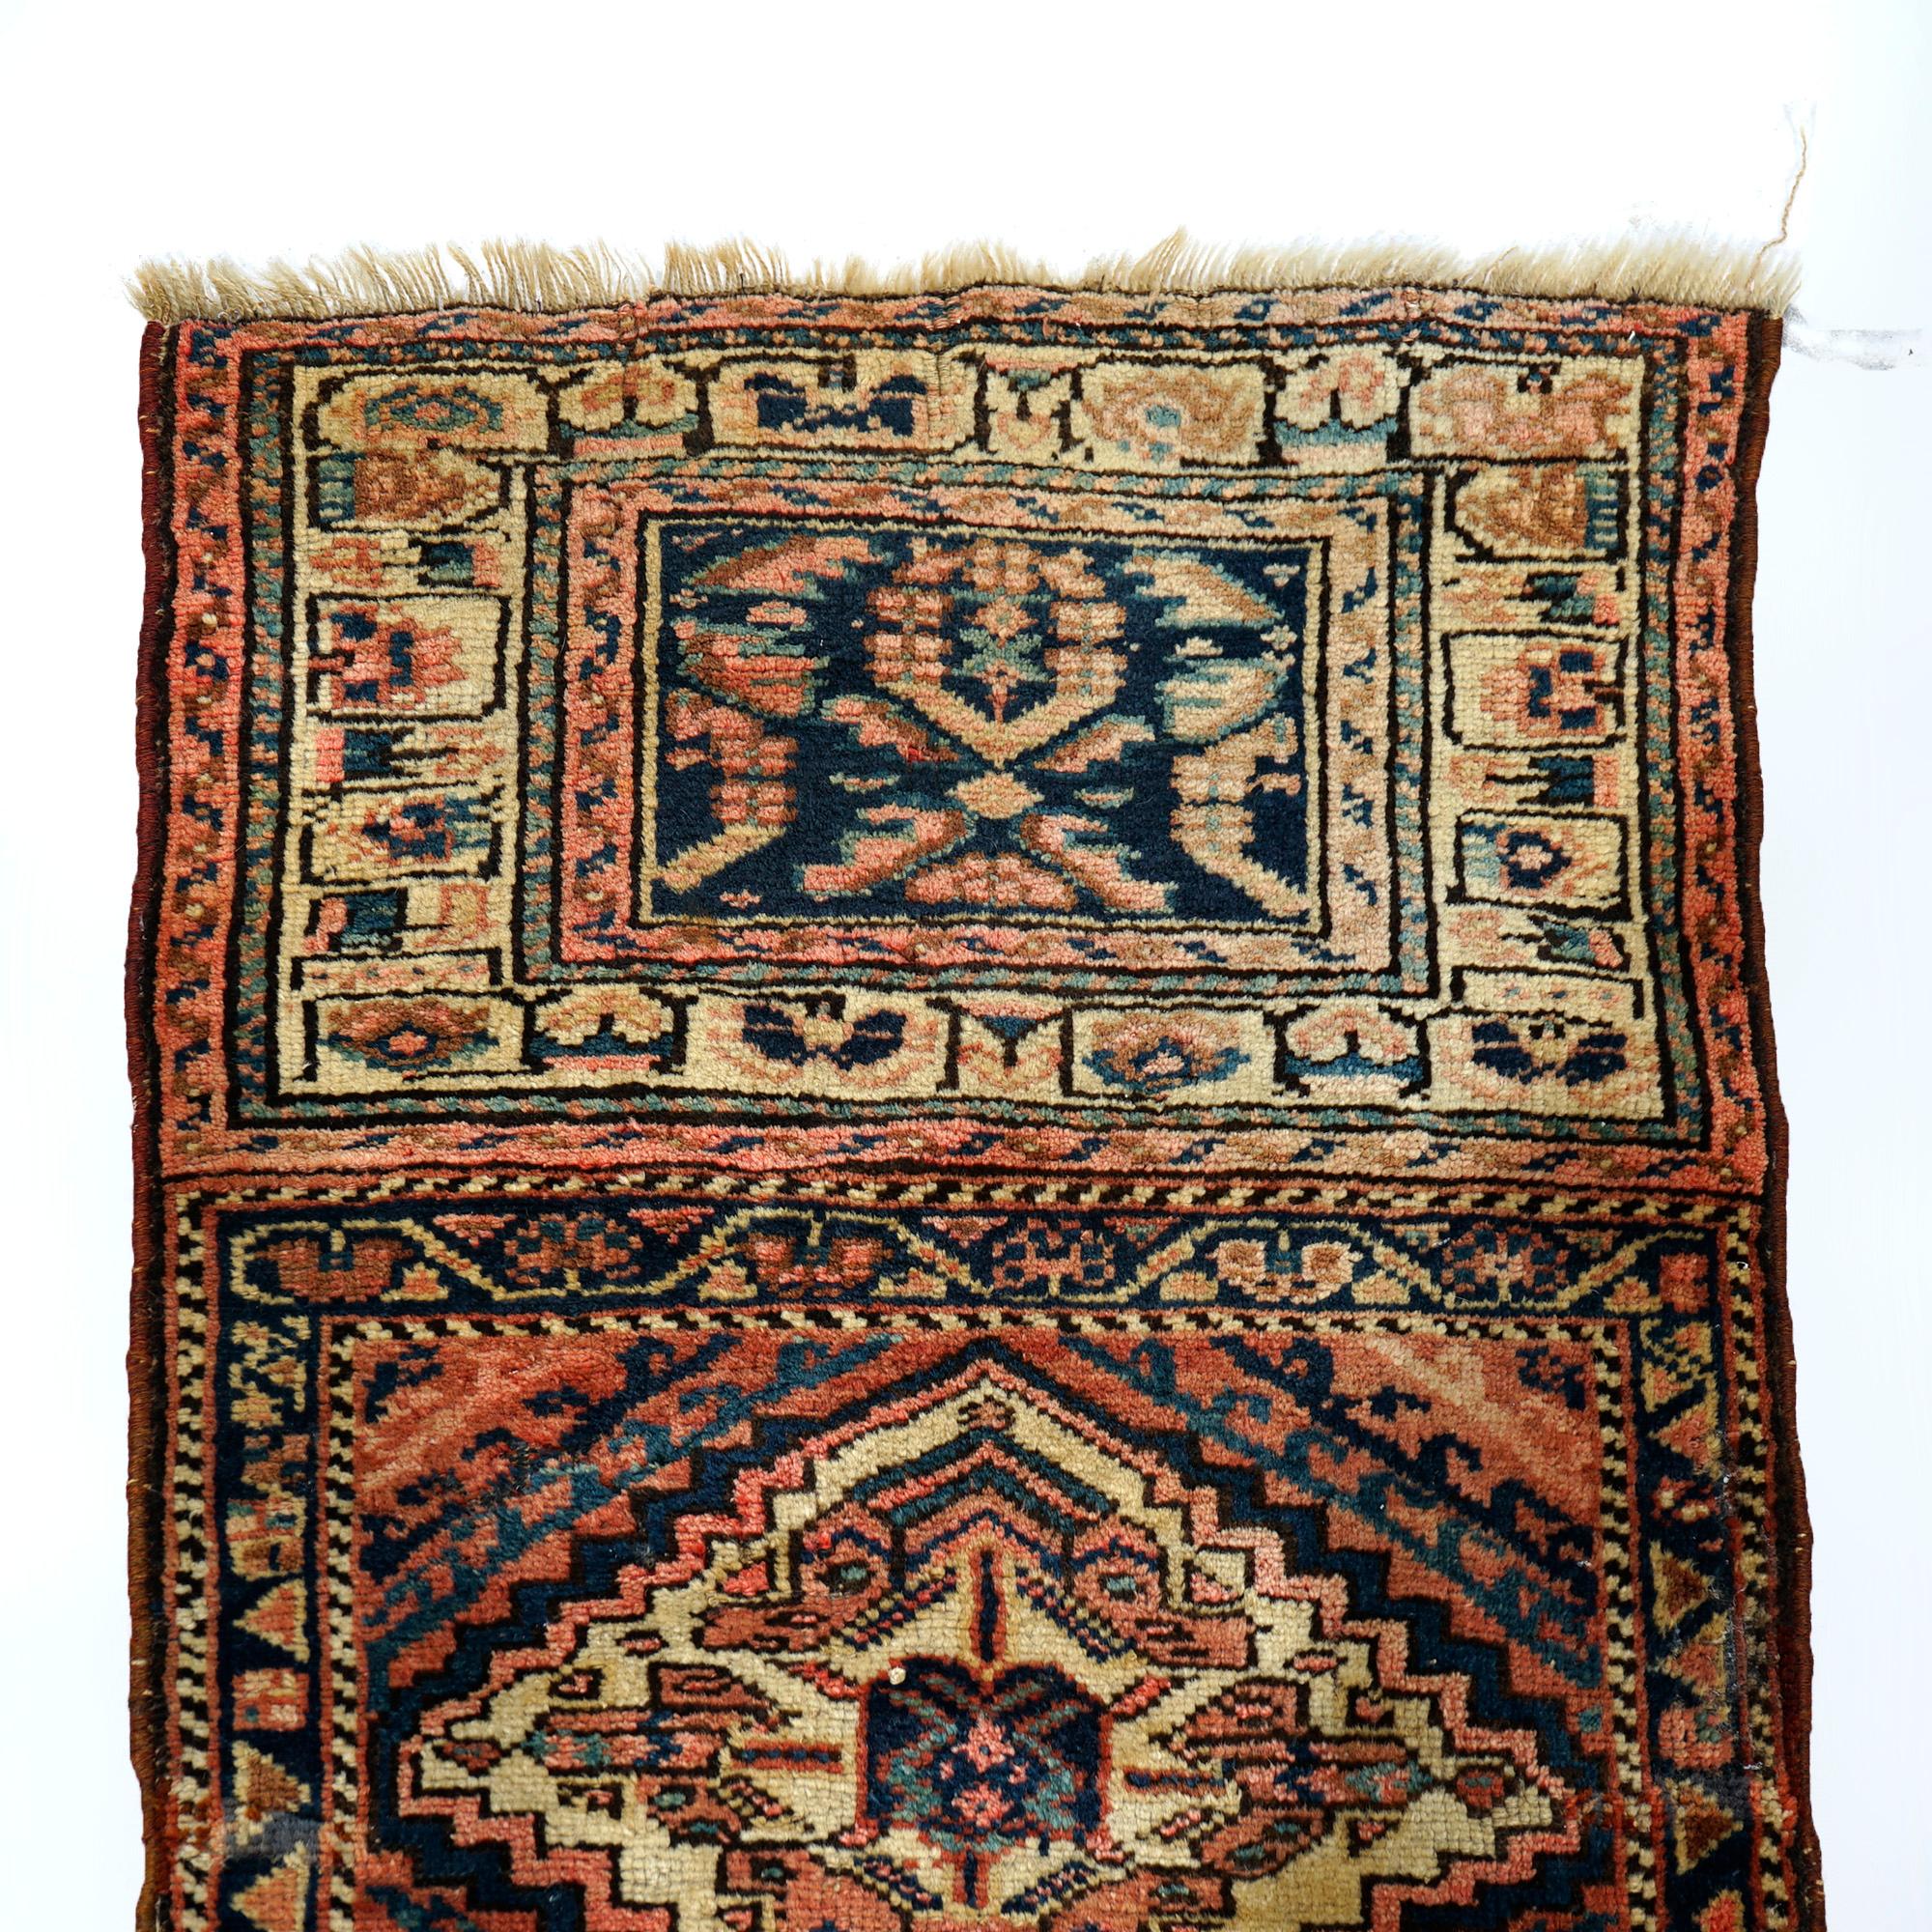 Un antique tapis de sampler tribal kurde offre une construction en laine avec deux panneaux, chacun ayant un design géométrique, c1920.

Mesures- 33.5'' x 24.5'' 

Note sur le catalogue : Demandez les TARIFS DE LIVRAISON RÉDUITS disponibles pour la